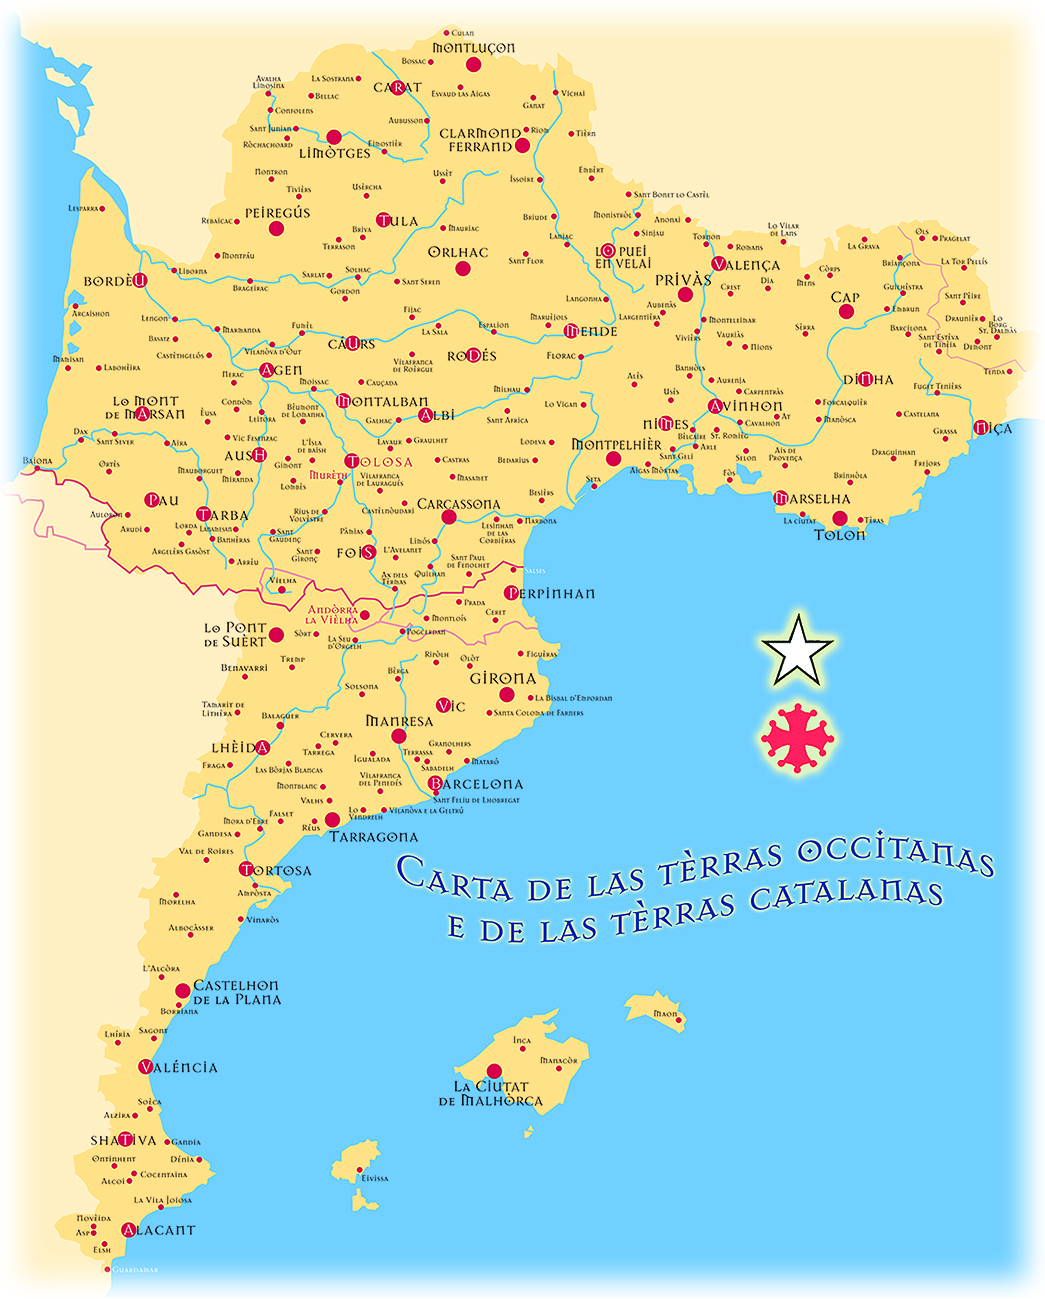 29.01.2011 Mapa d'Occitània, Catalunya, València i les Illes avui.  -  Jordi Bibià